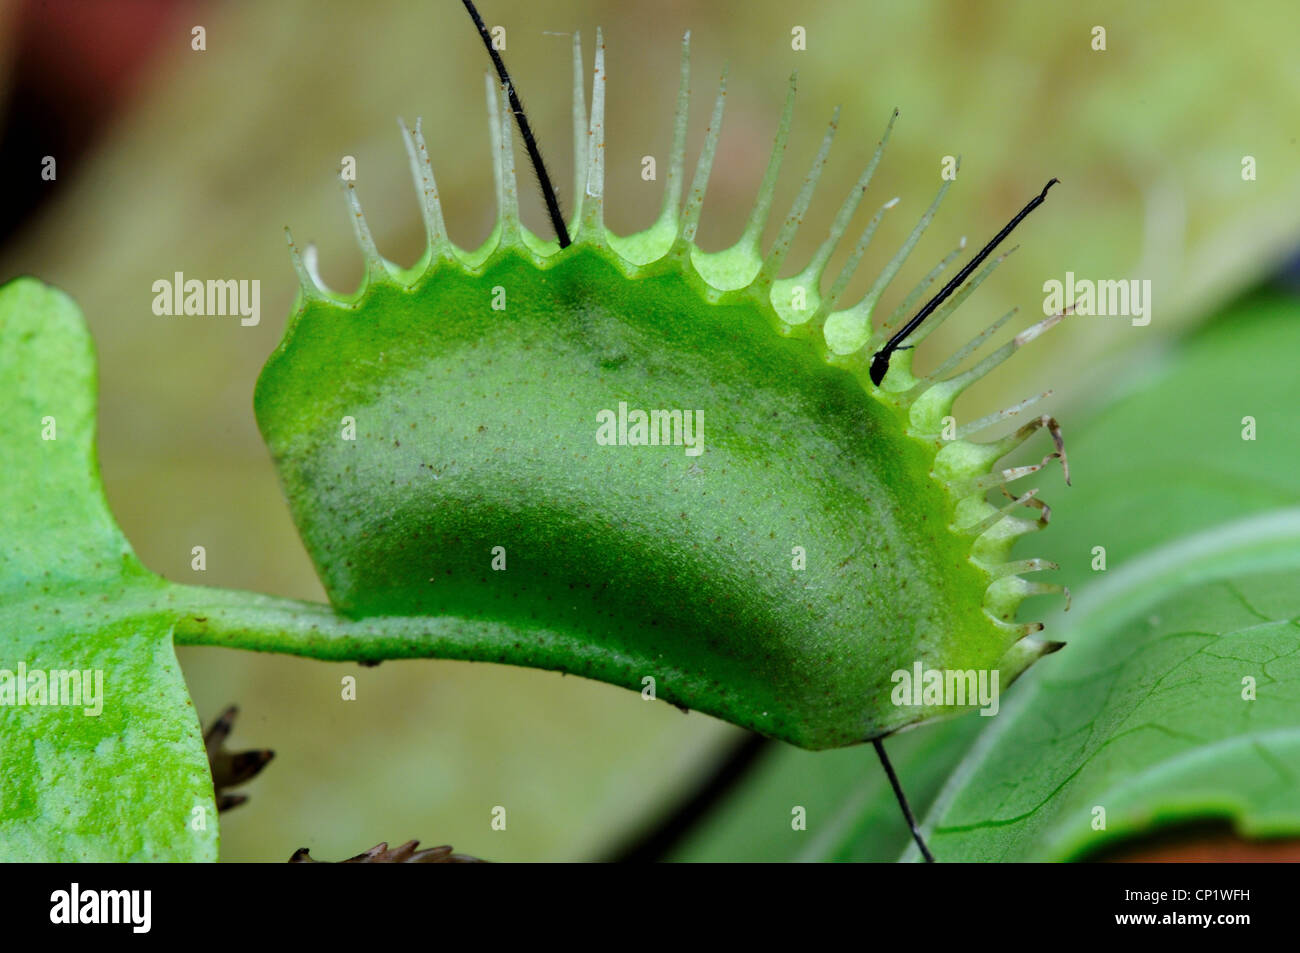 Un bug pris dans une Dionaea muscipula Dionée. Banque D'Images